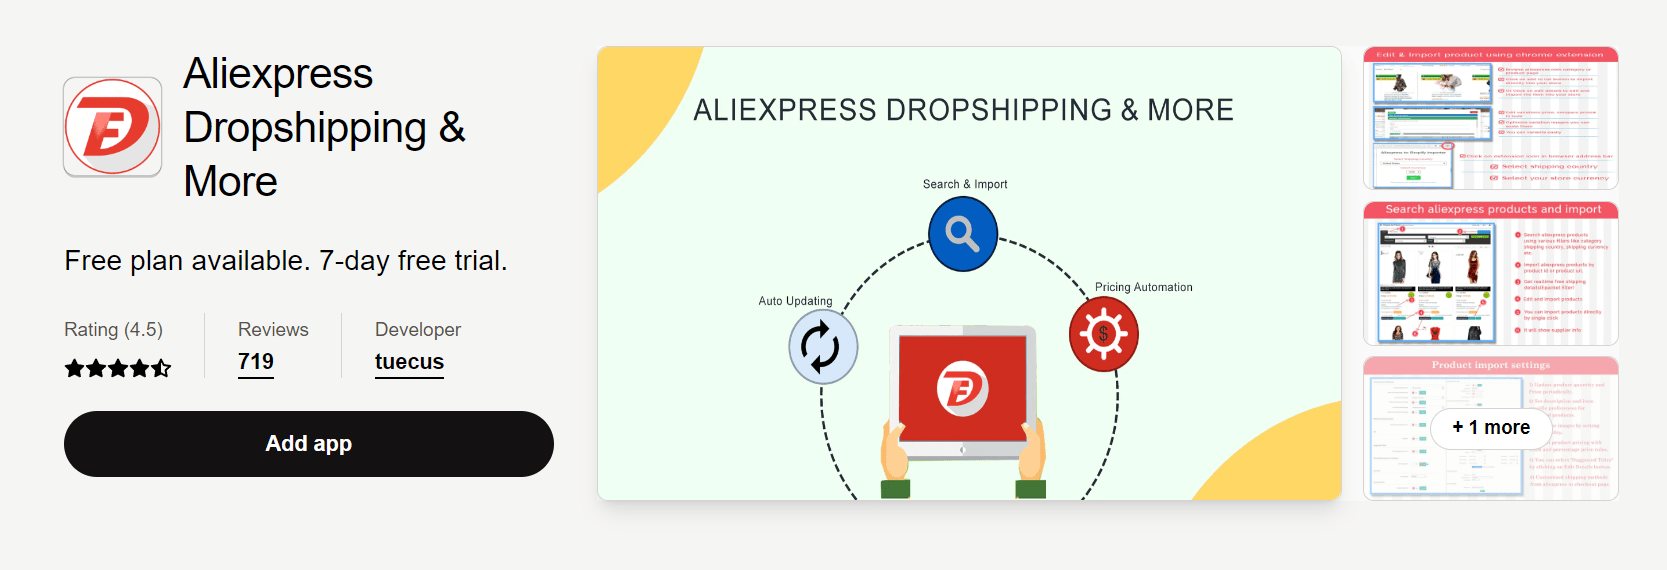 Aplikacja do dropshippingu na Aliexpress